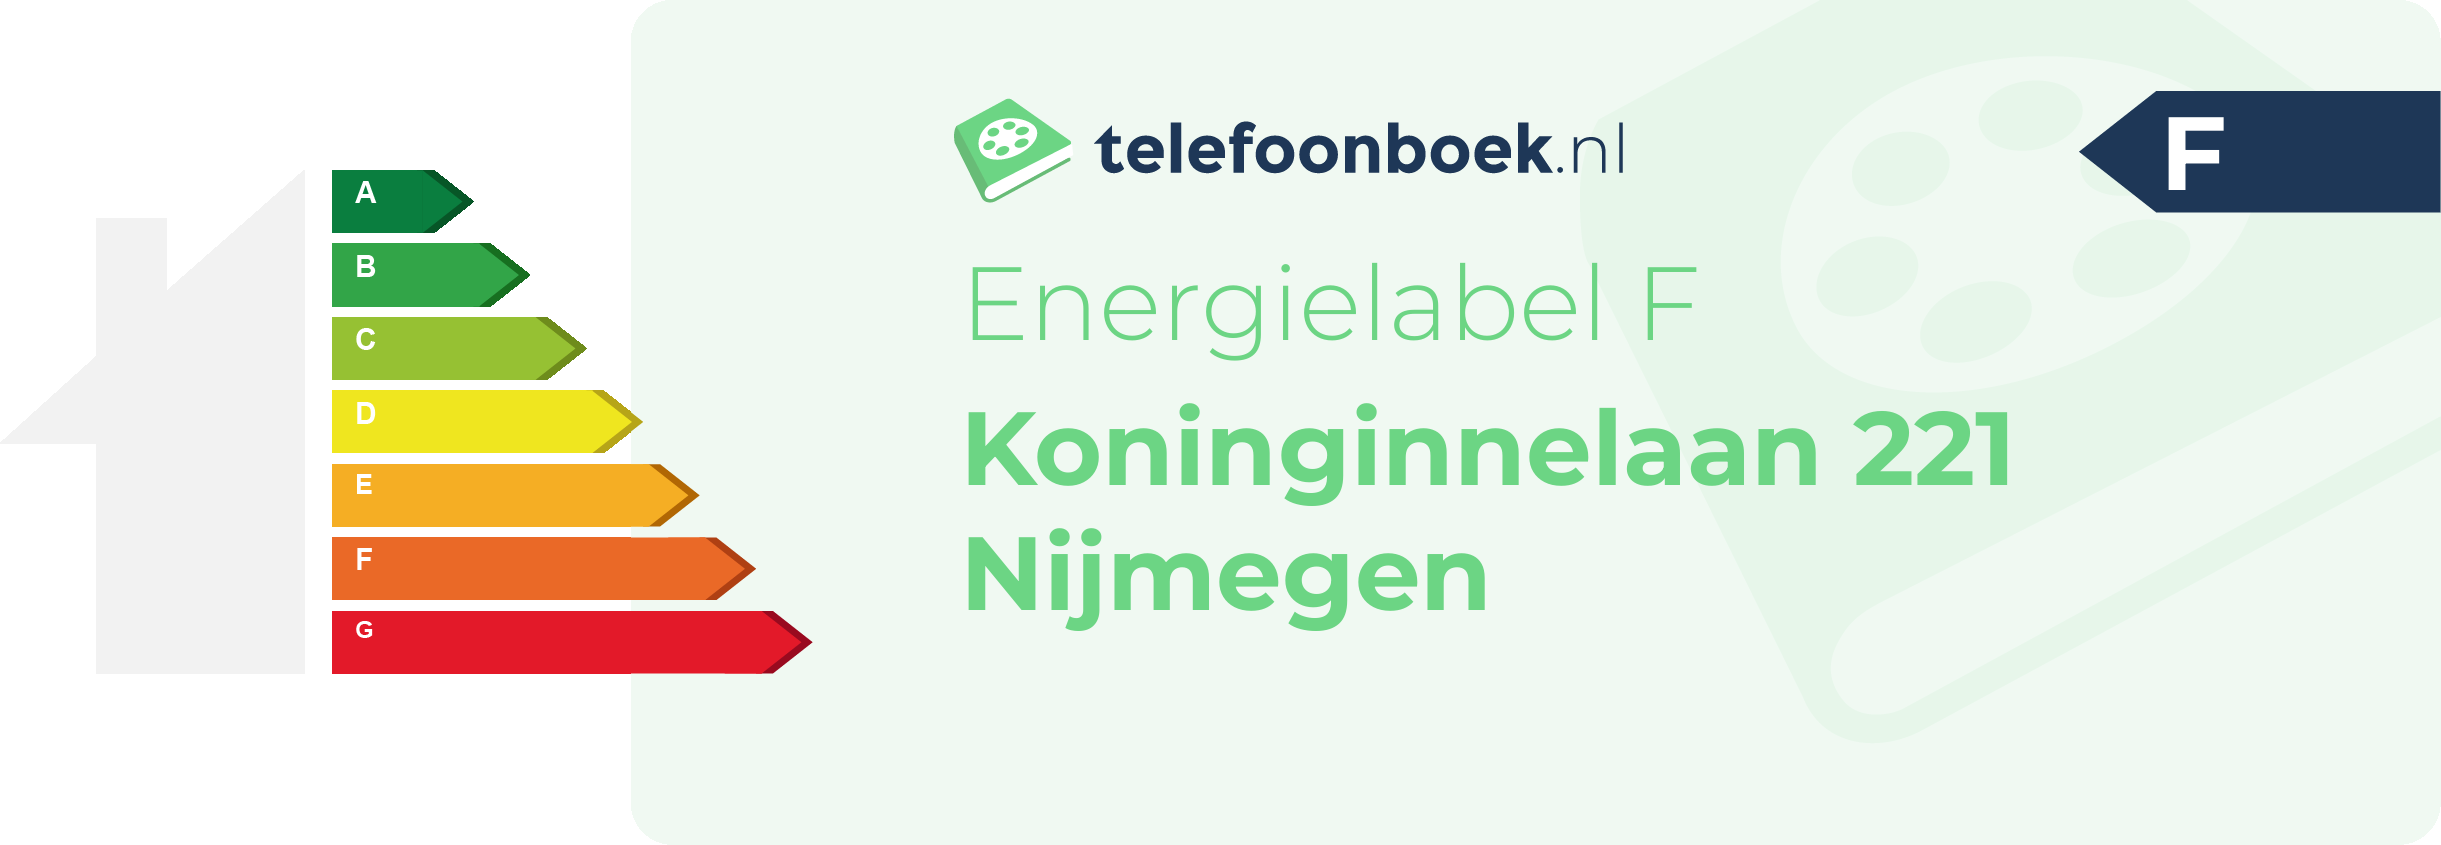 Energielabel Koninginnelaan 221 Nijmegen